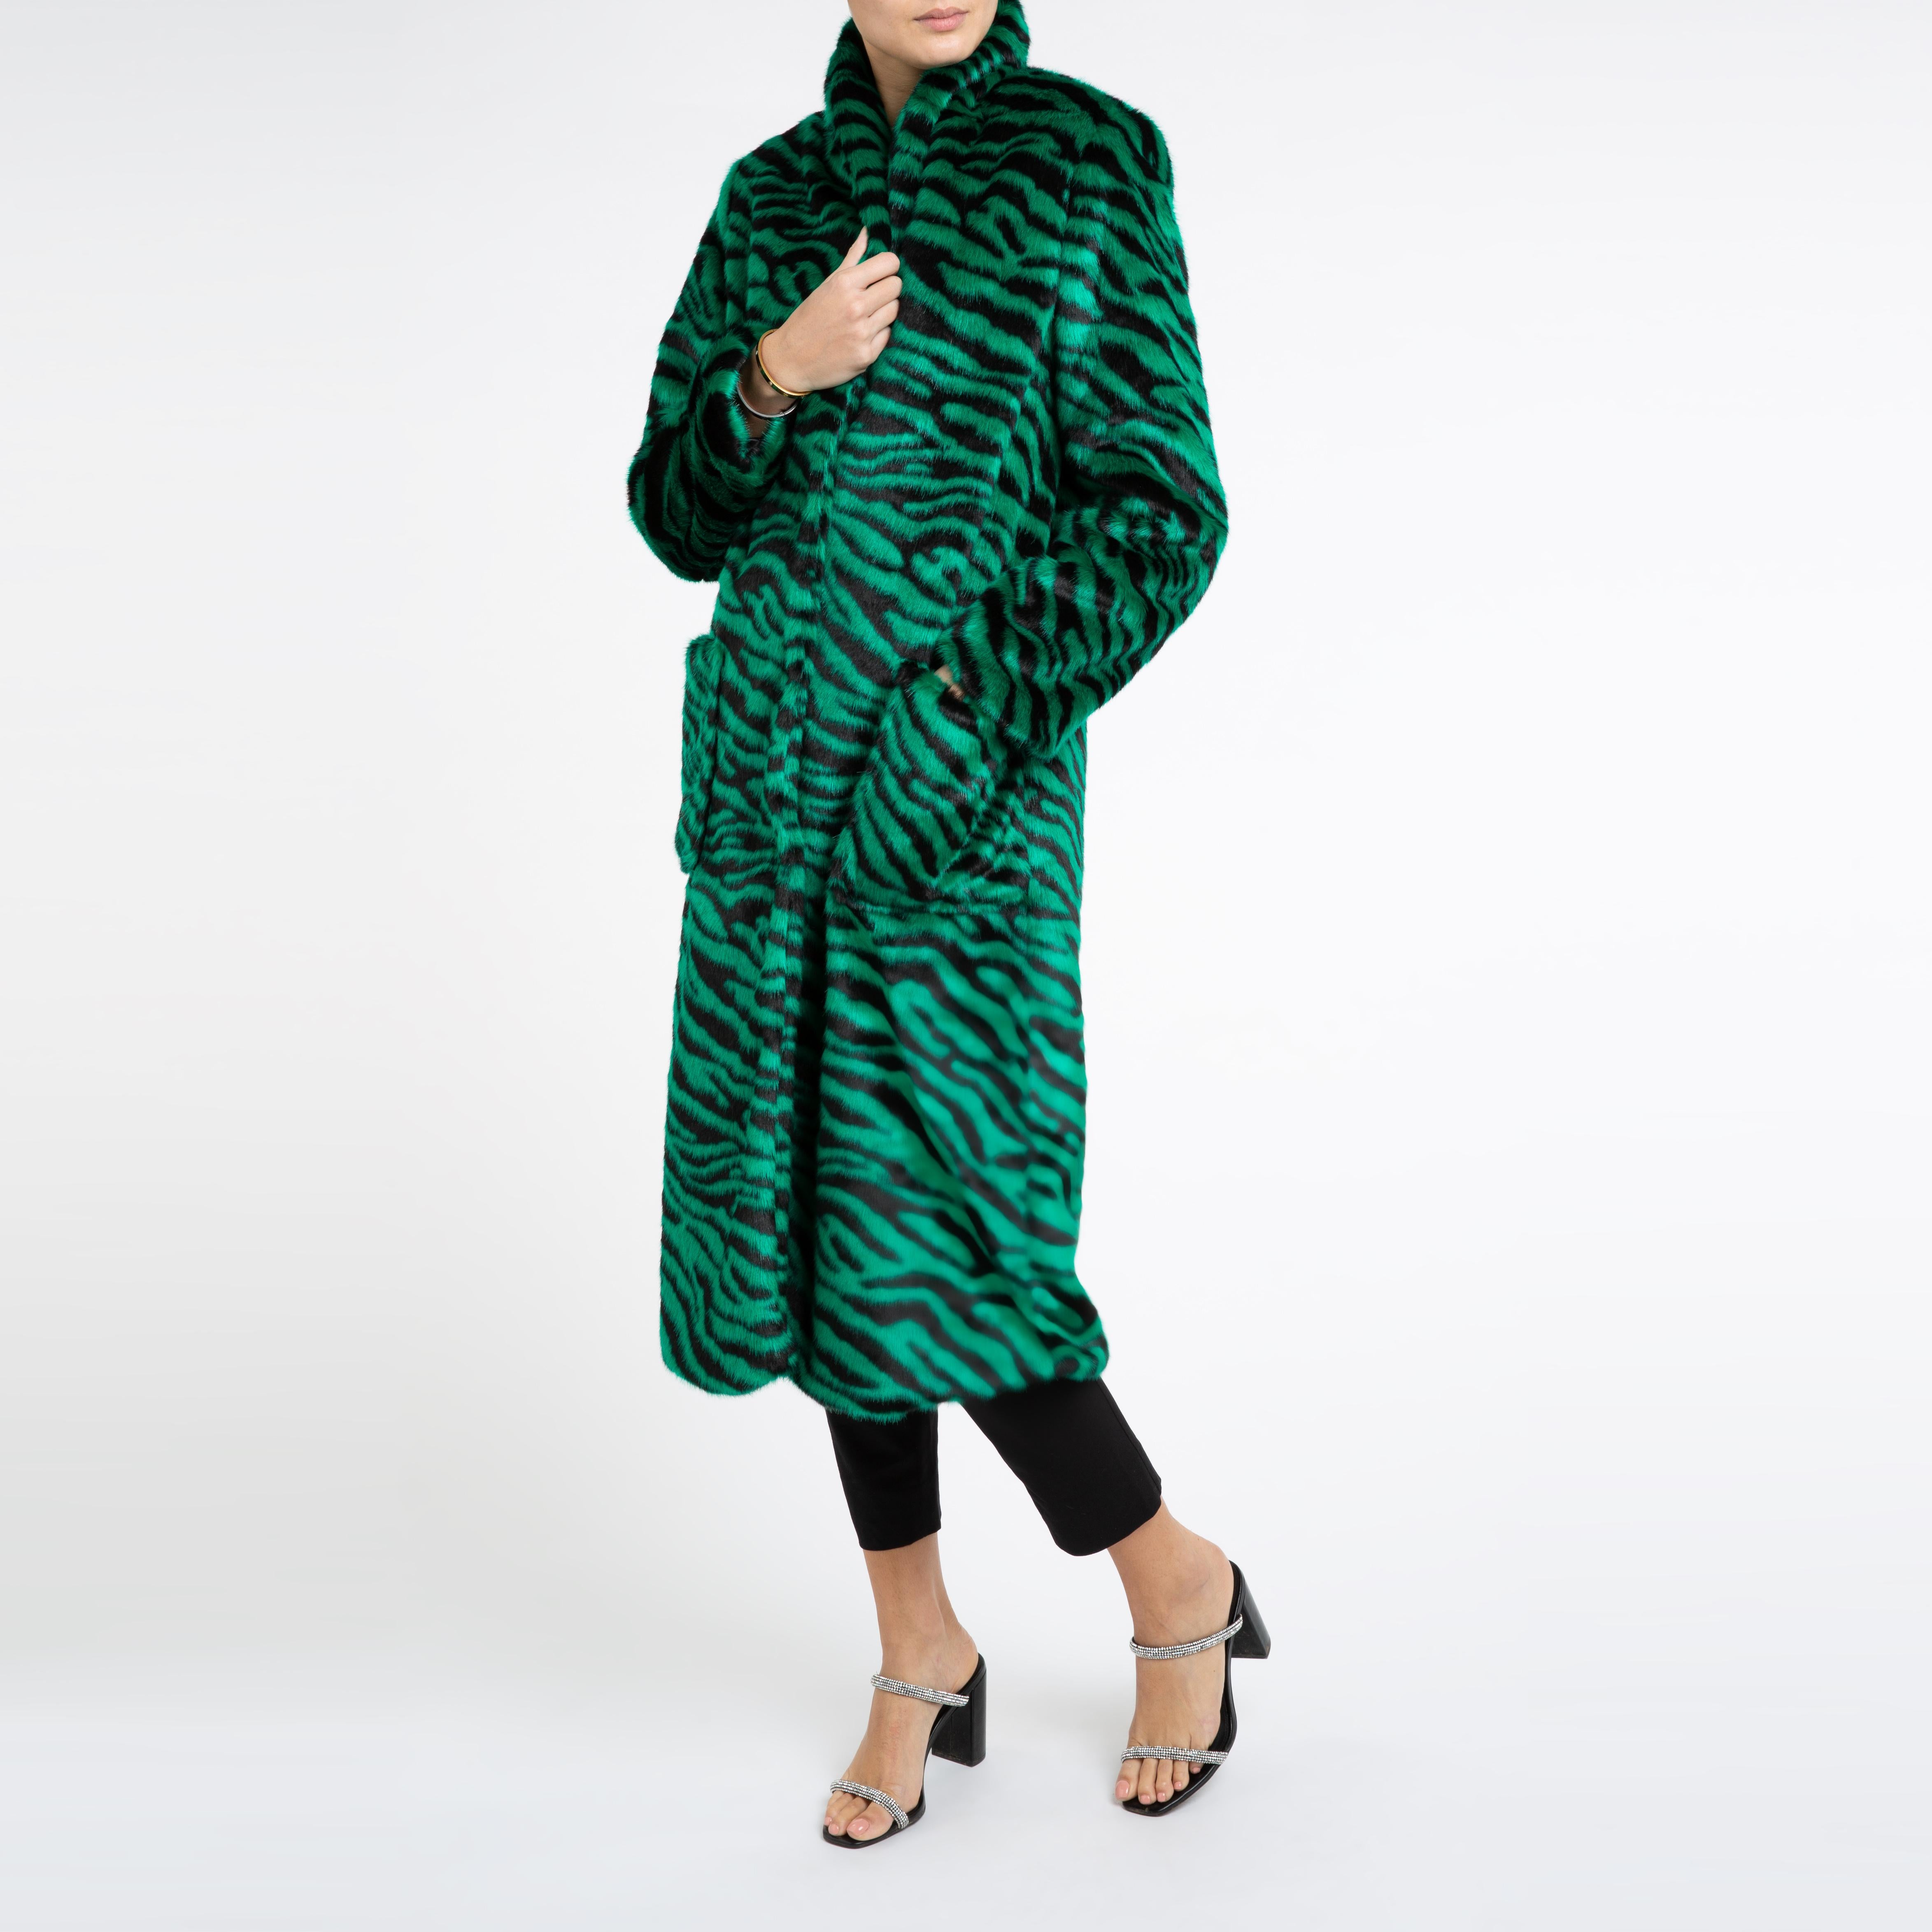 Verheyen London Esmeralda Faux Fur Coat in Emerald Green Zebra Print size uk 10 For Sale 3